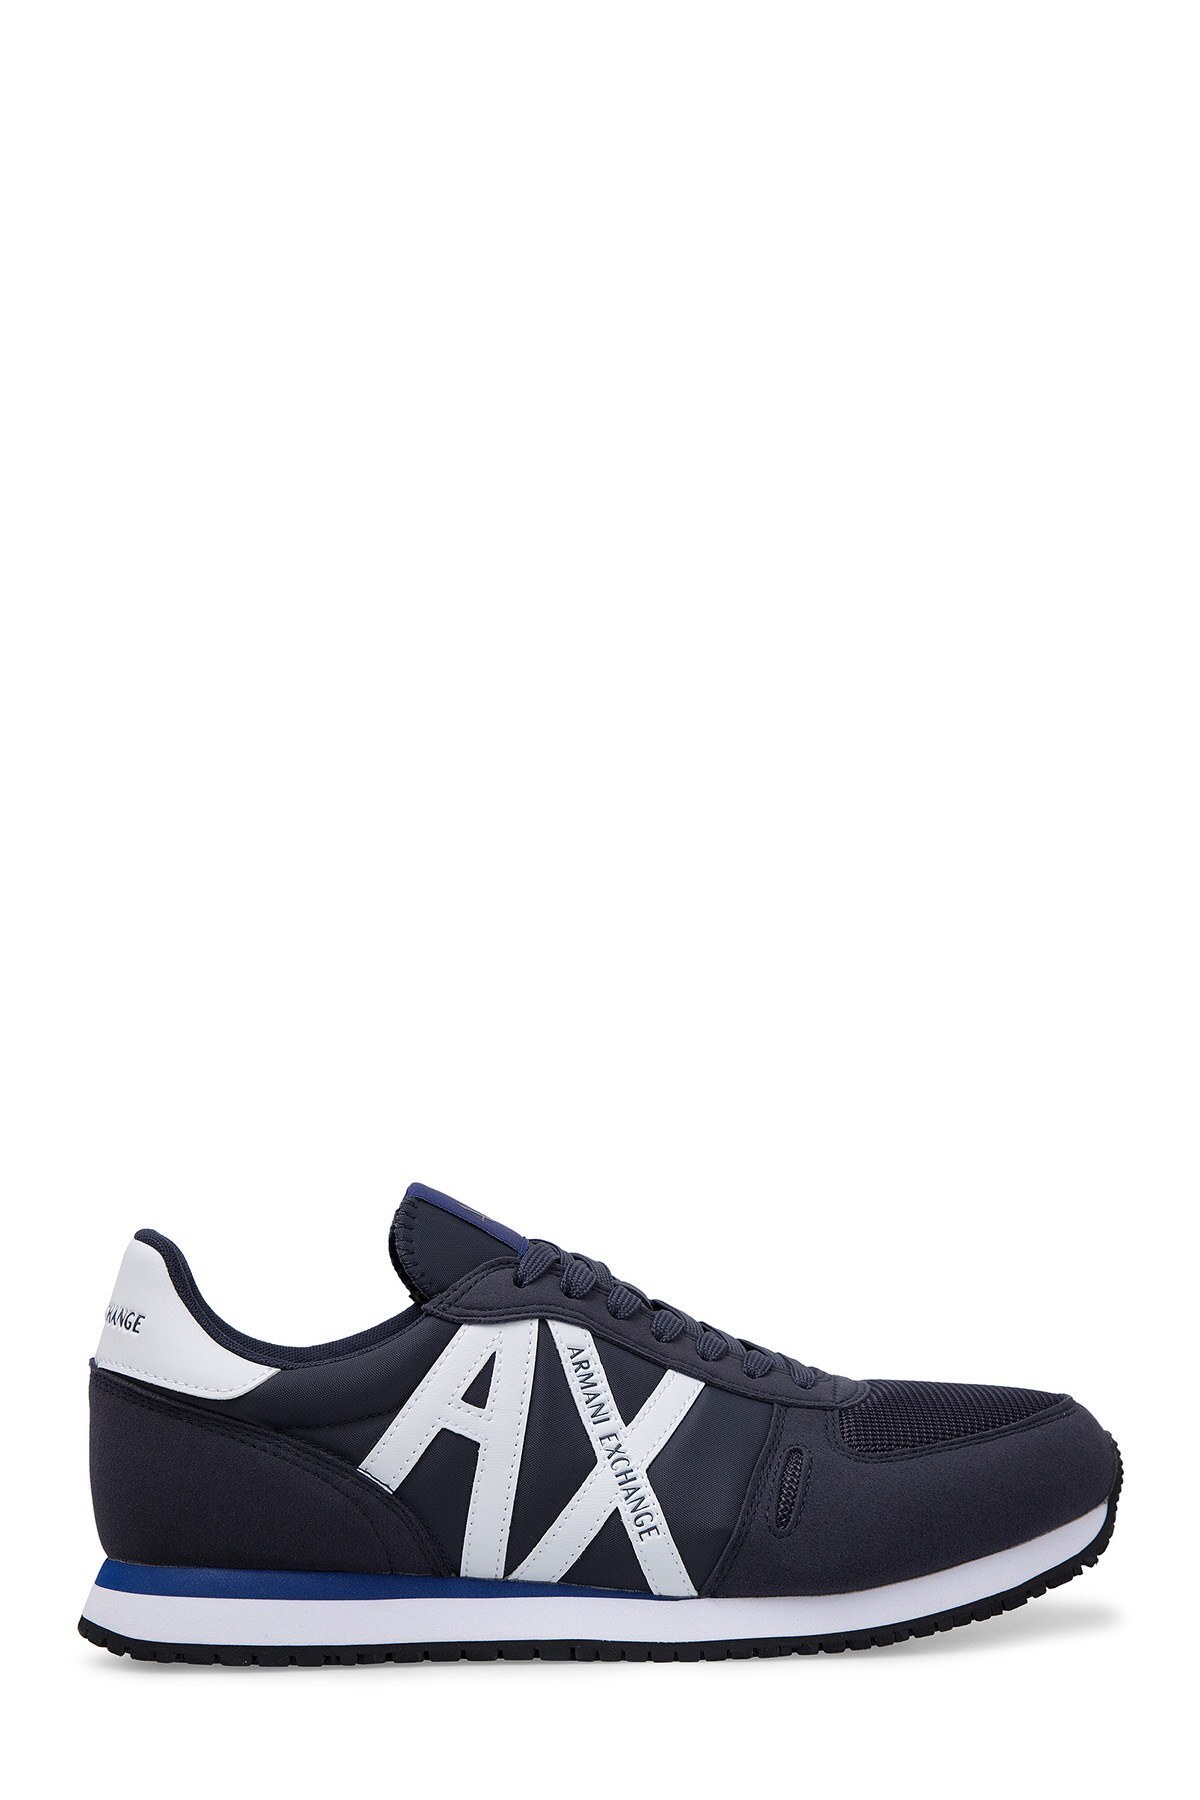 Armani Exchange Erkek Ayakkabı XUX017 XV028 D813 LACİVERT-BEYAZ